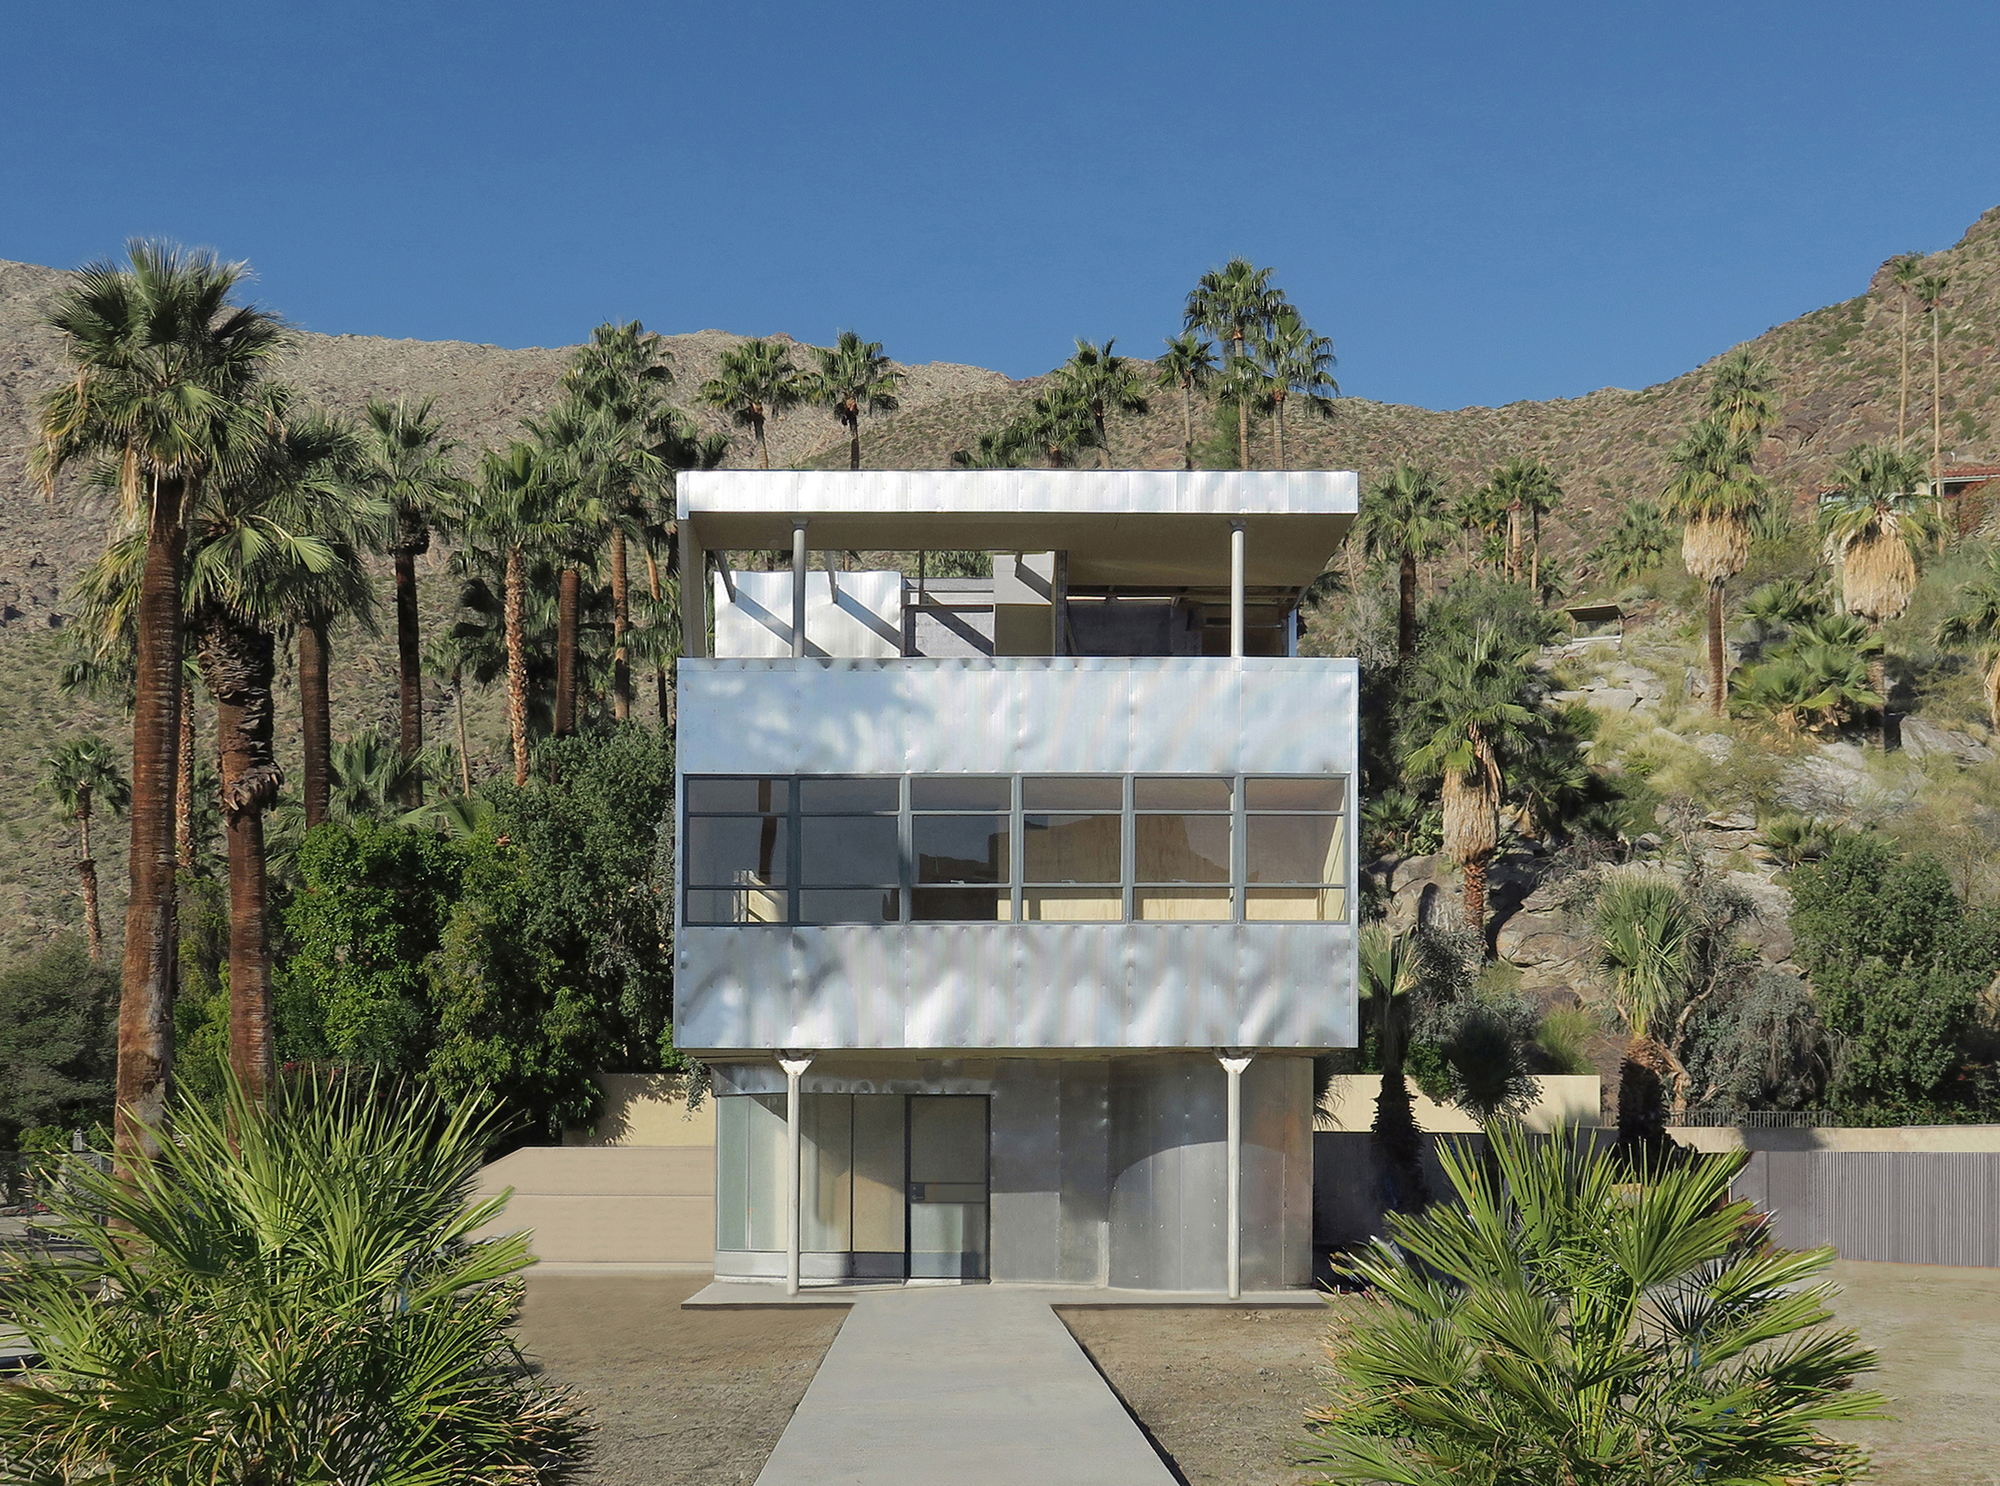 Пол Клеманс запечатлел модернистский алюминиевый дом в Палм-Спрингс, Калифорния